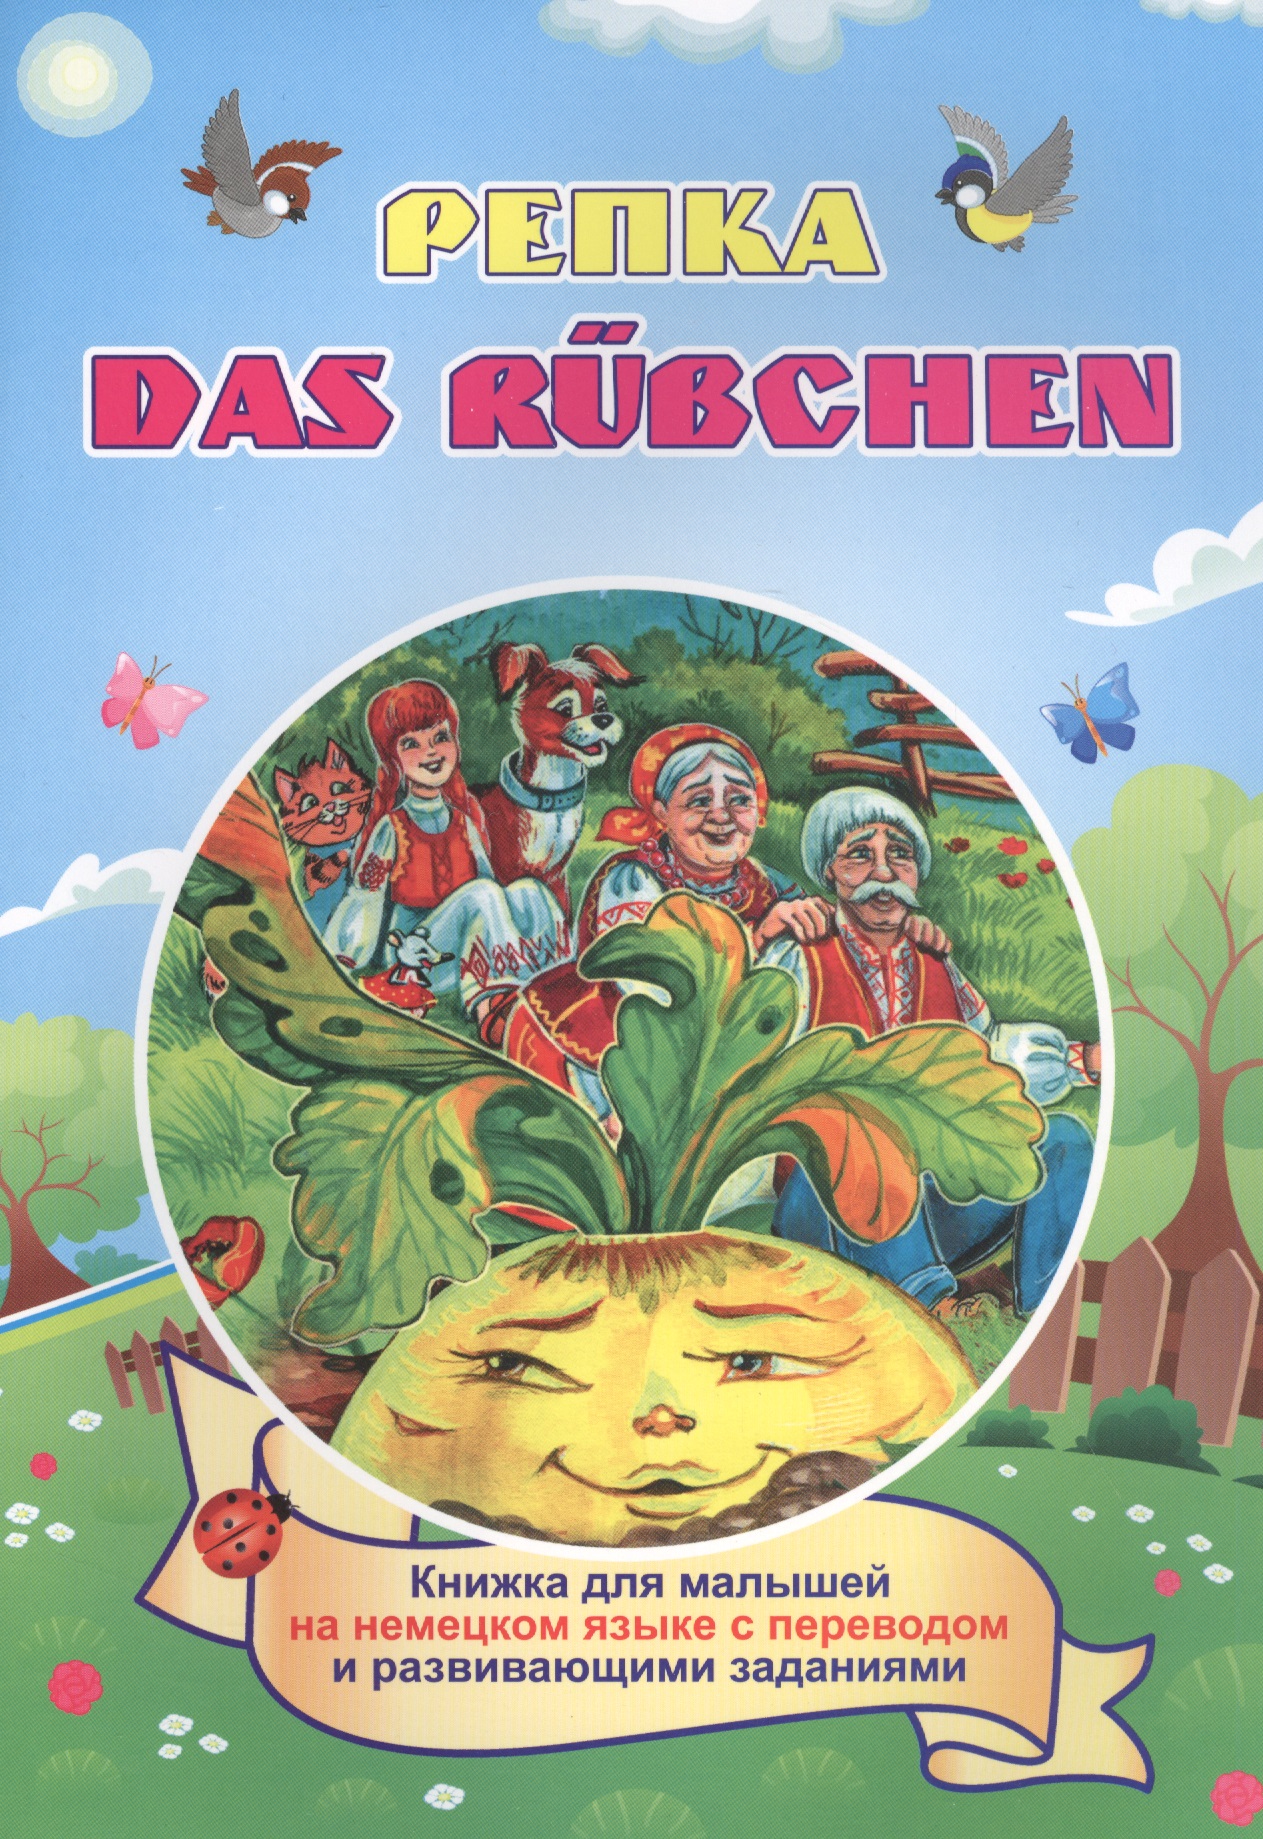 Белых И. В. Репка. Das Rubchen (Russisches Maerchen). Книжка для малышей на немецком языке с переводом и развивающими заданиями